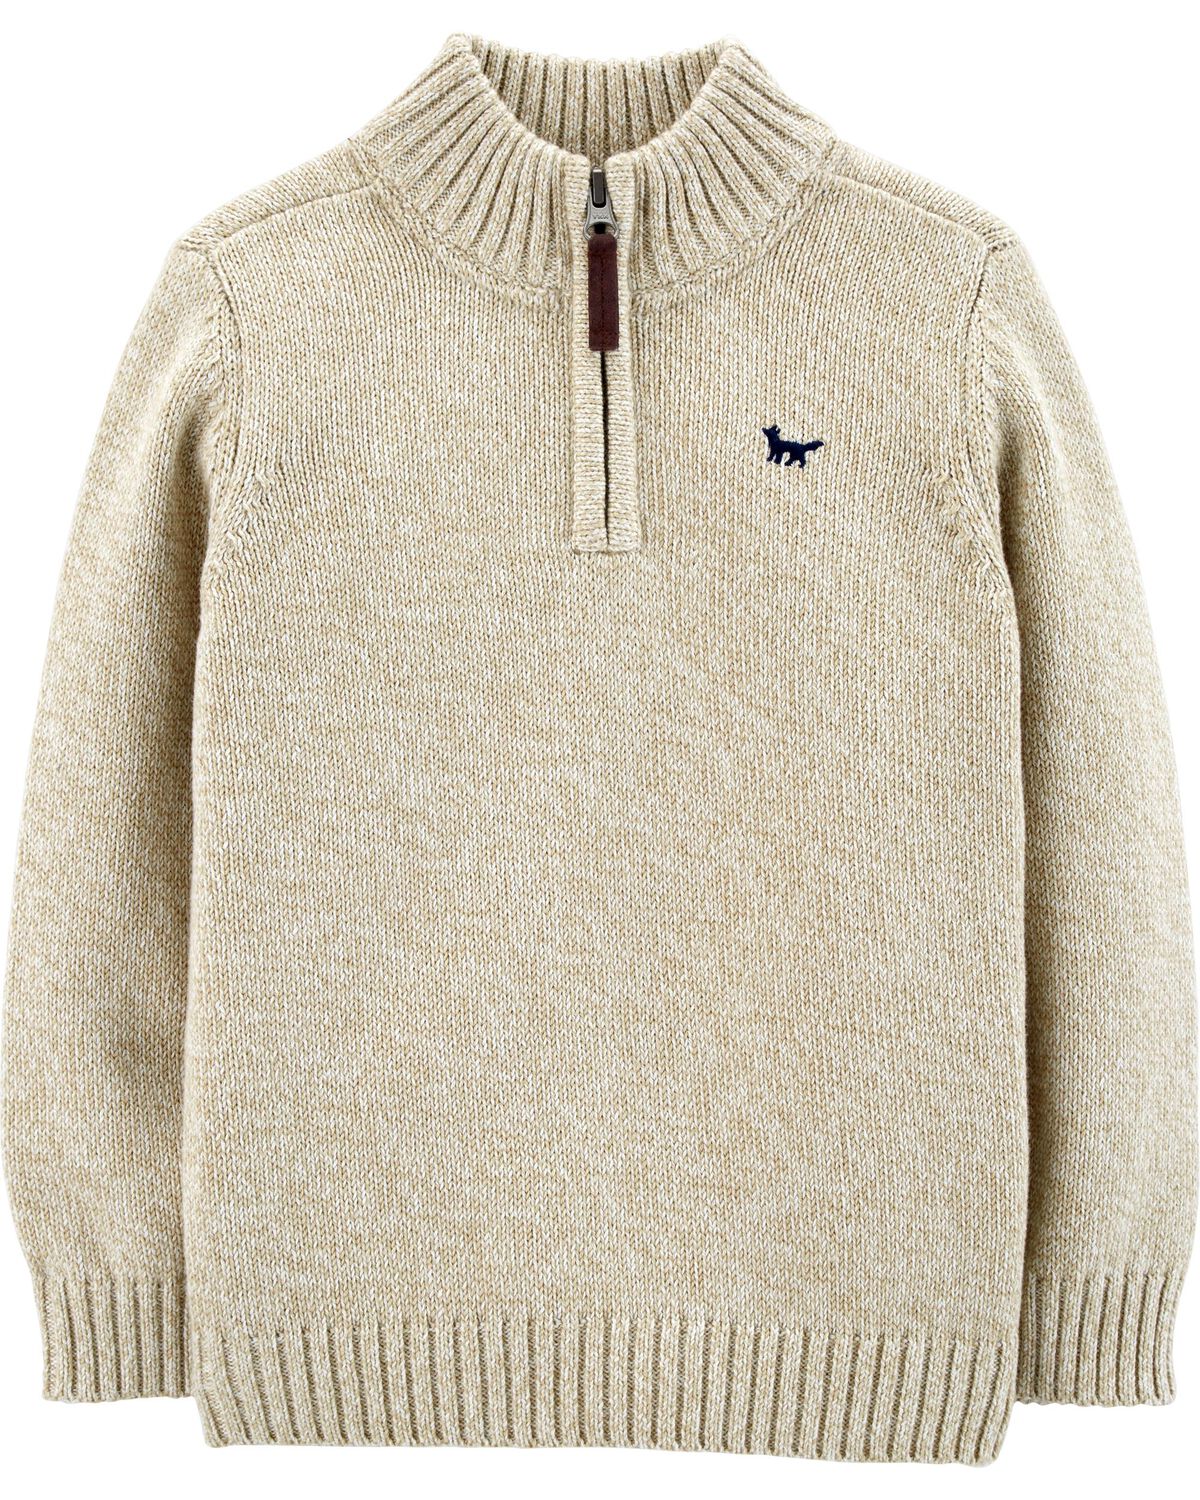 Half-Zip Pullover Sweater